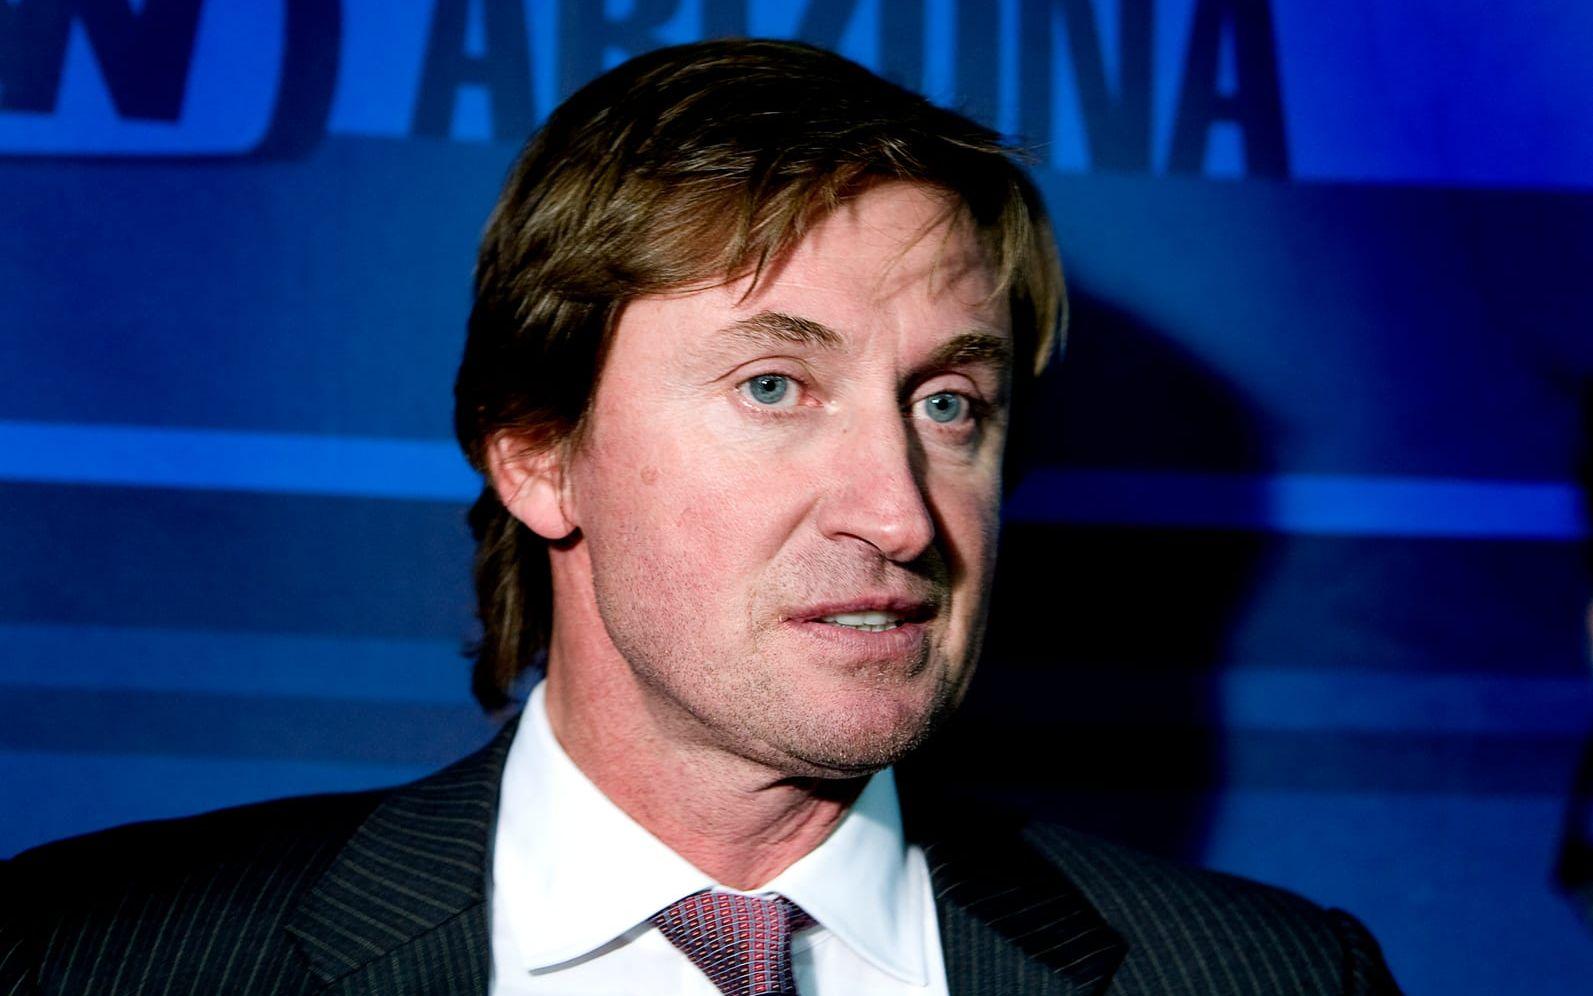 89-90. Wayne Gretzky i Los Angeles Kings drog in 15 miljoner kronor. Bild: Bildbyrån